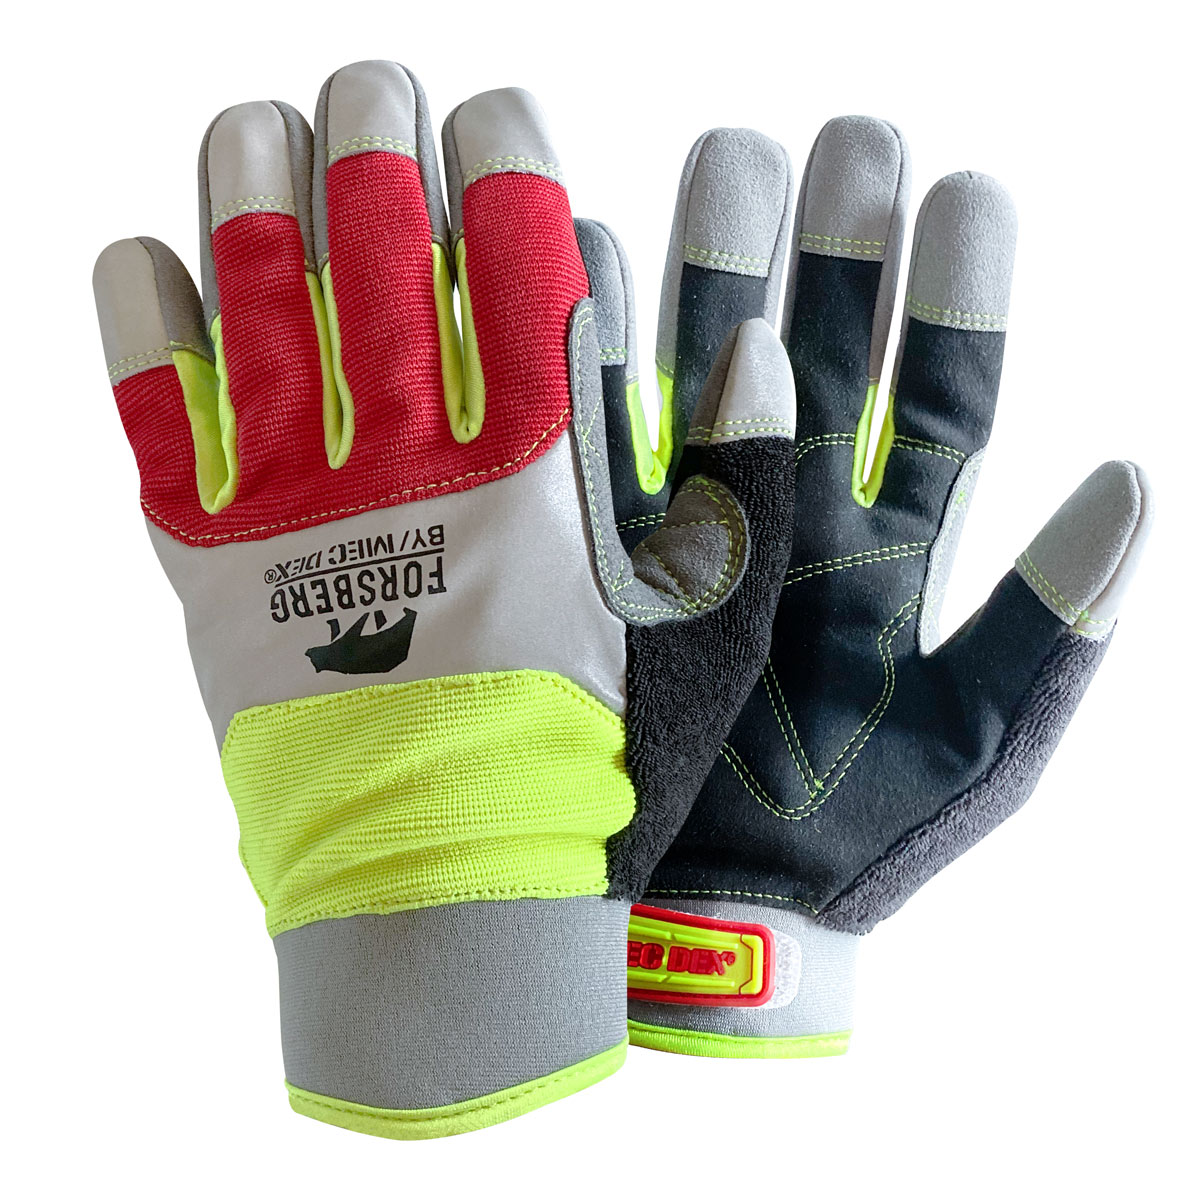 FORSBERG reinforced work gloves